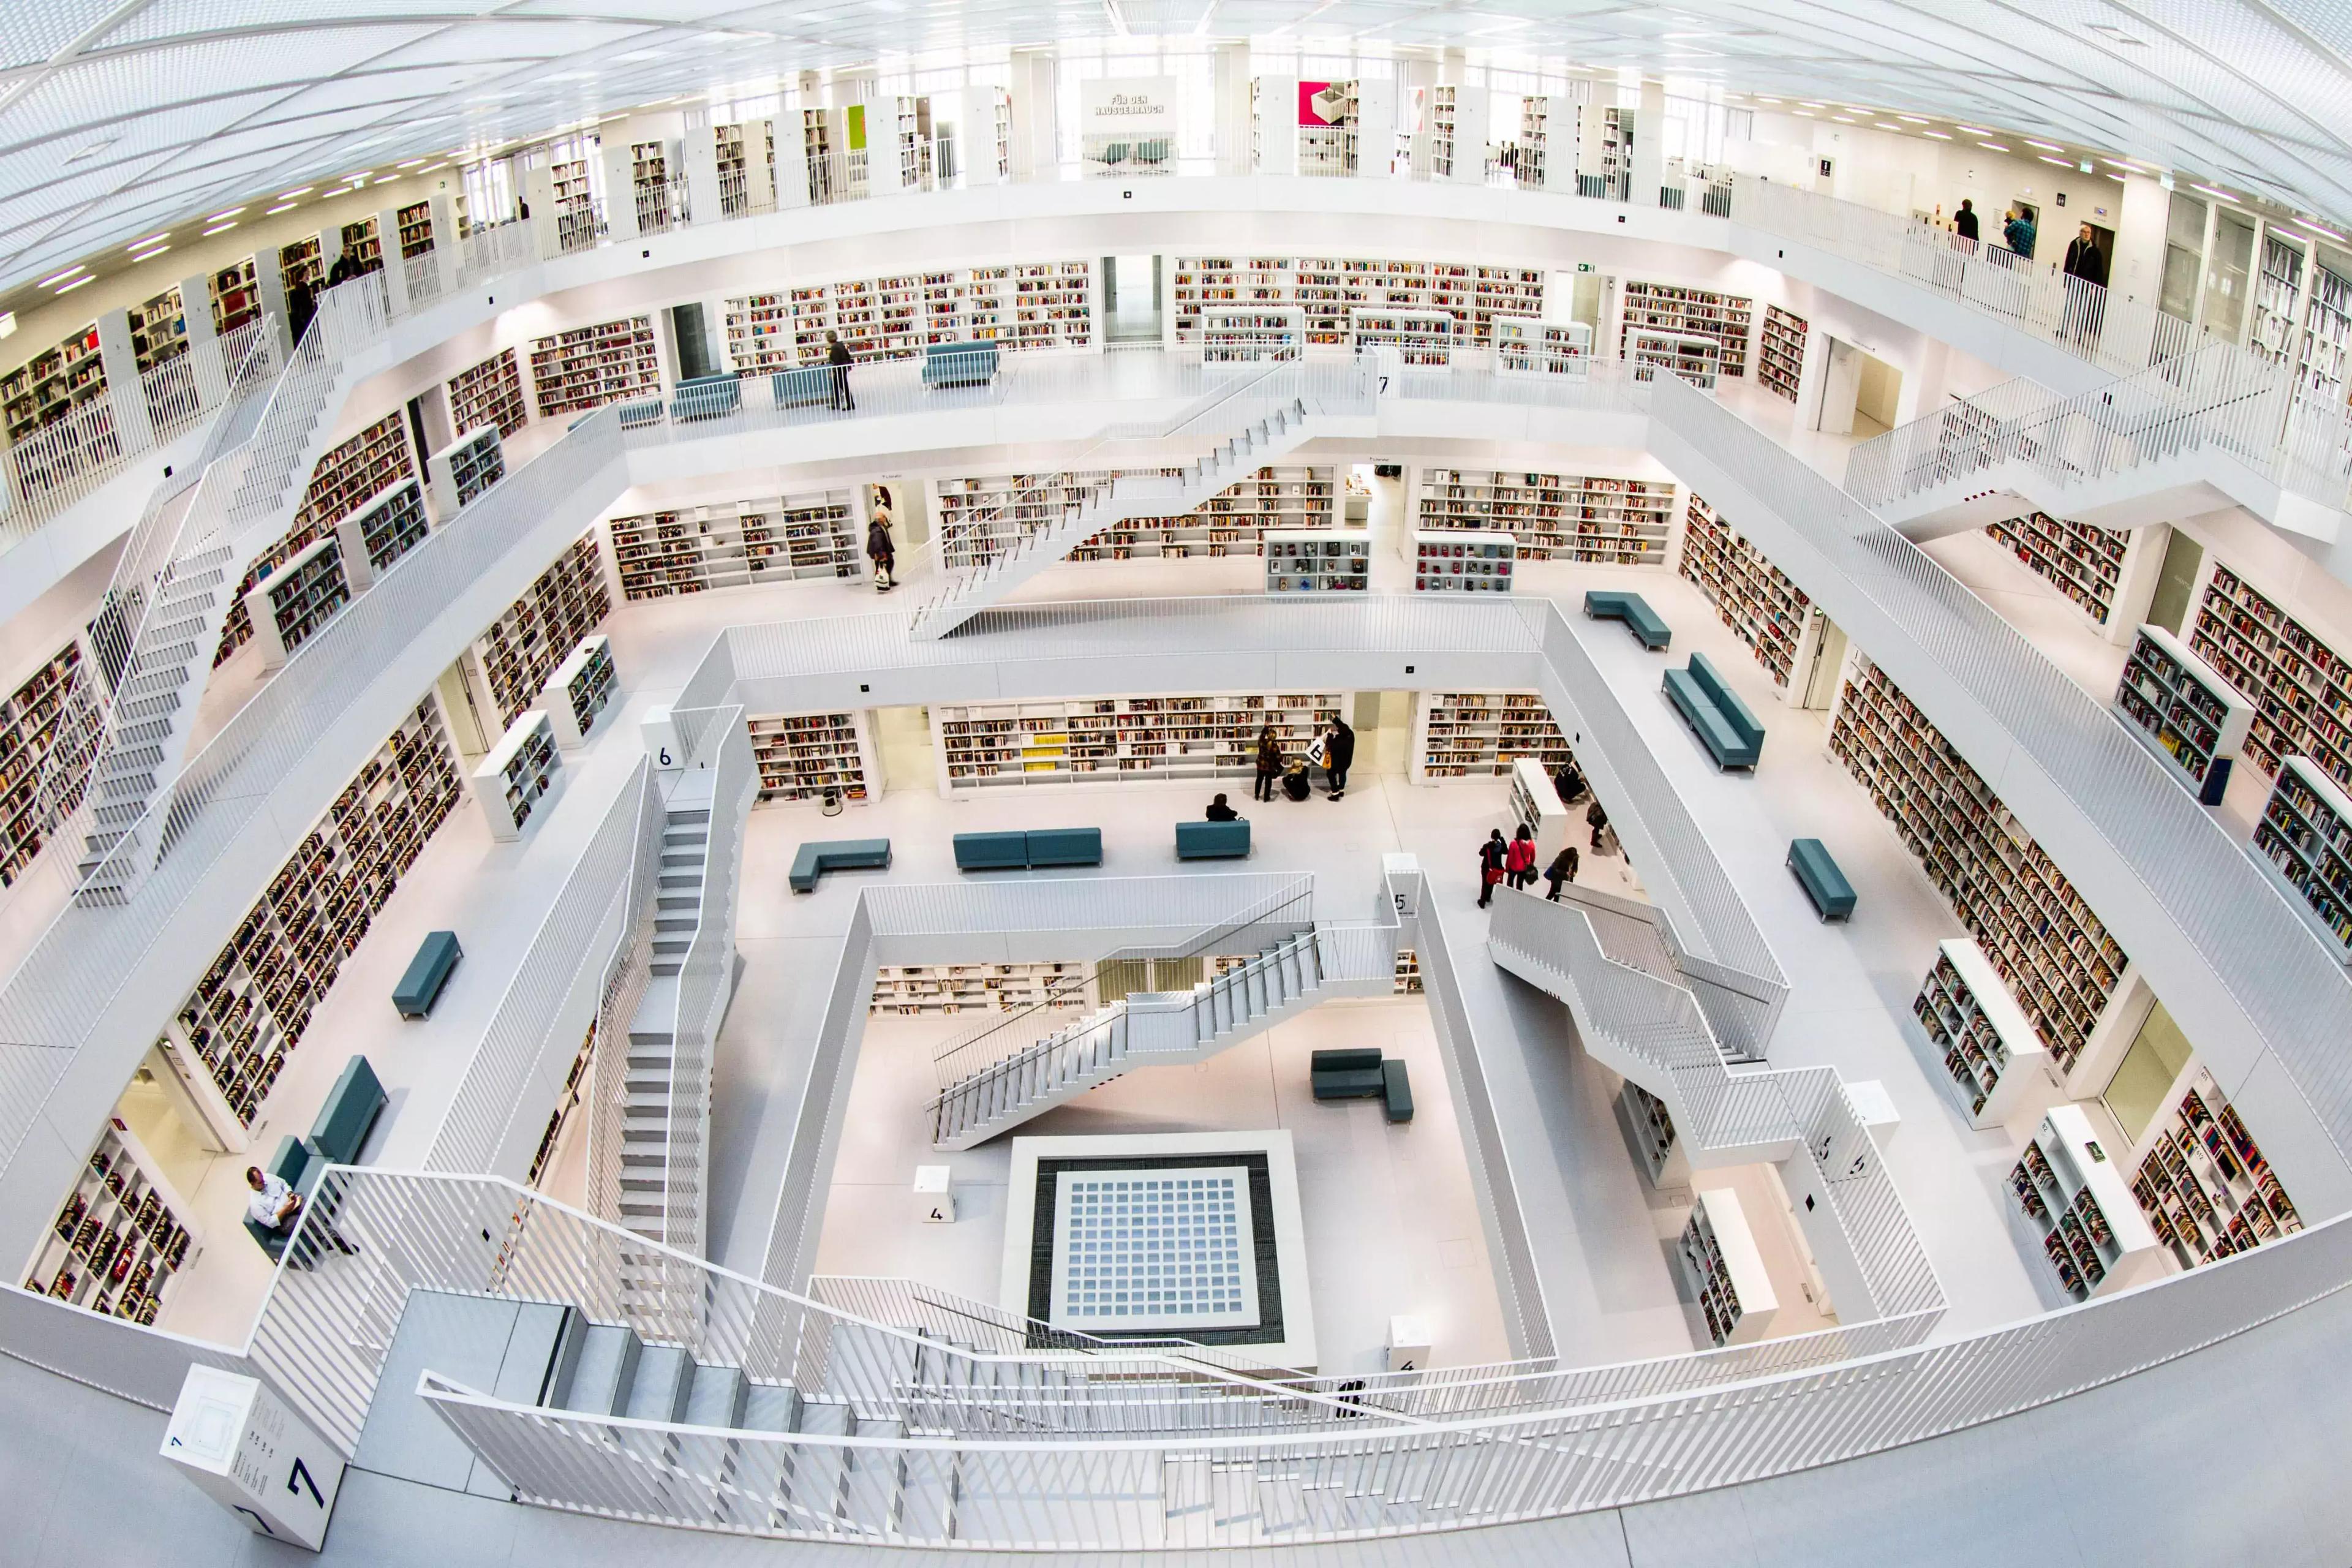 Stuttgart City Library - Stuttgart, Germany